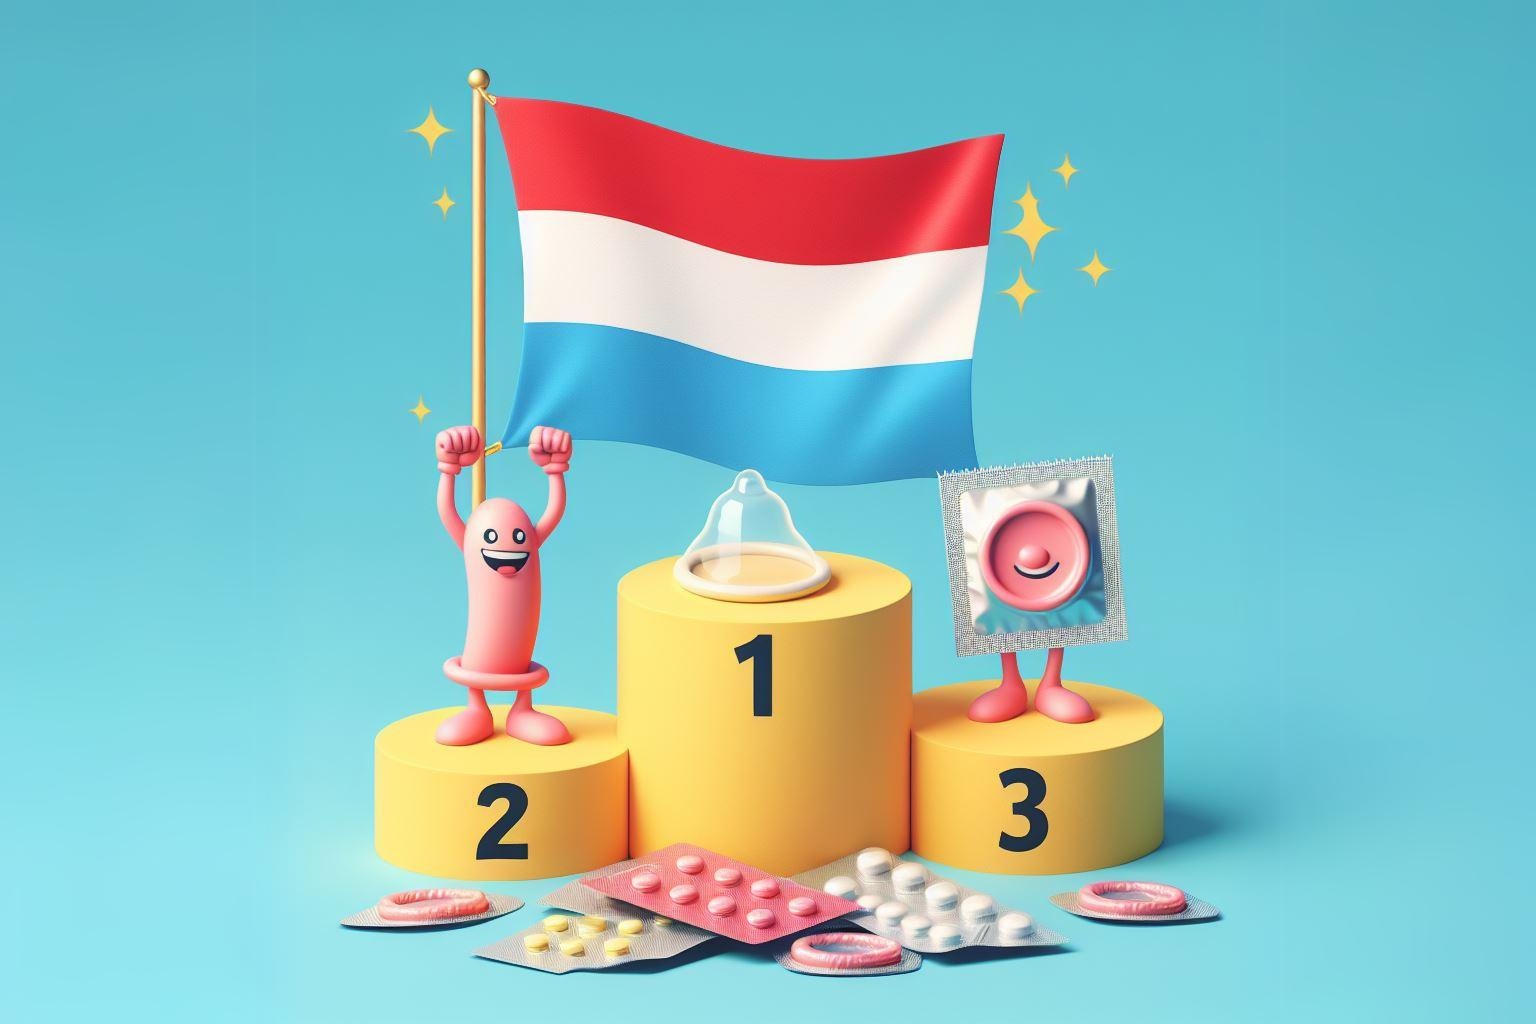 Luxemburg zászlaja az 1. helyen a győztes dobogón a fogamzásgátlás témájában